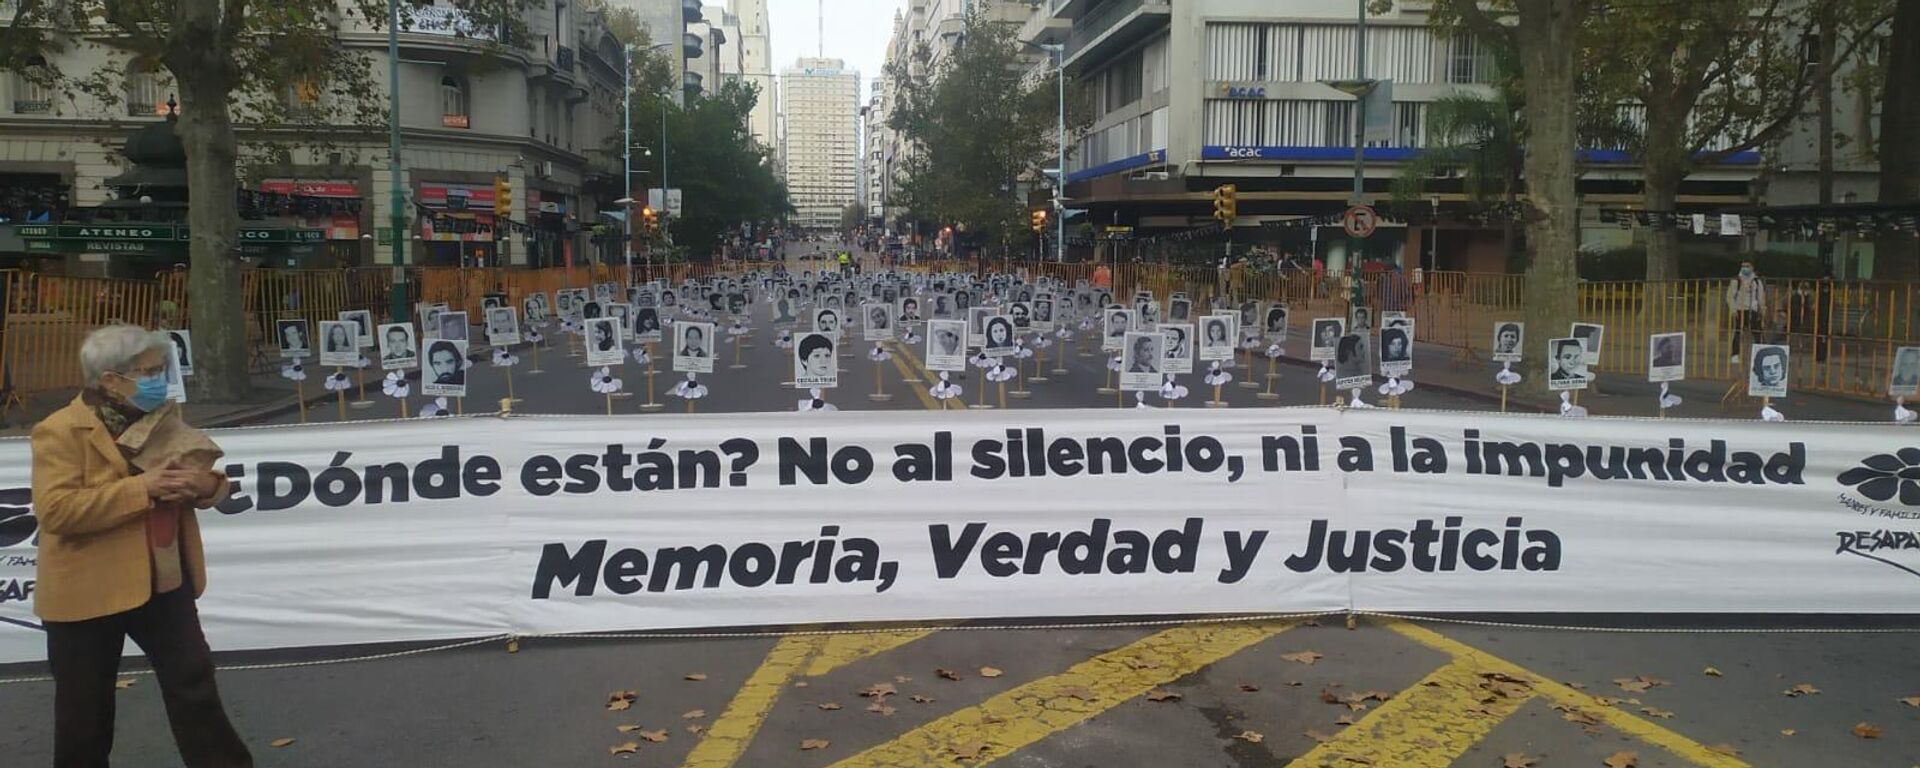 Marcha de silencio en conmemoración de las víctimas de la ditadura en Uruguay - Sputnik Mundo, 1920, 22.10.2021